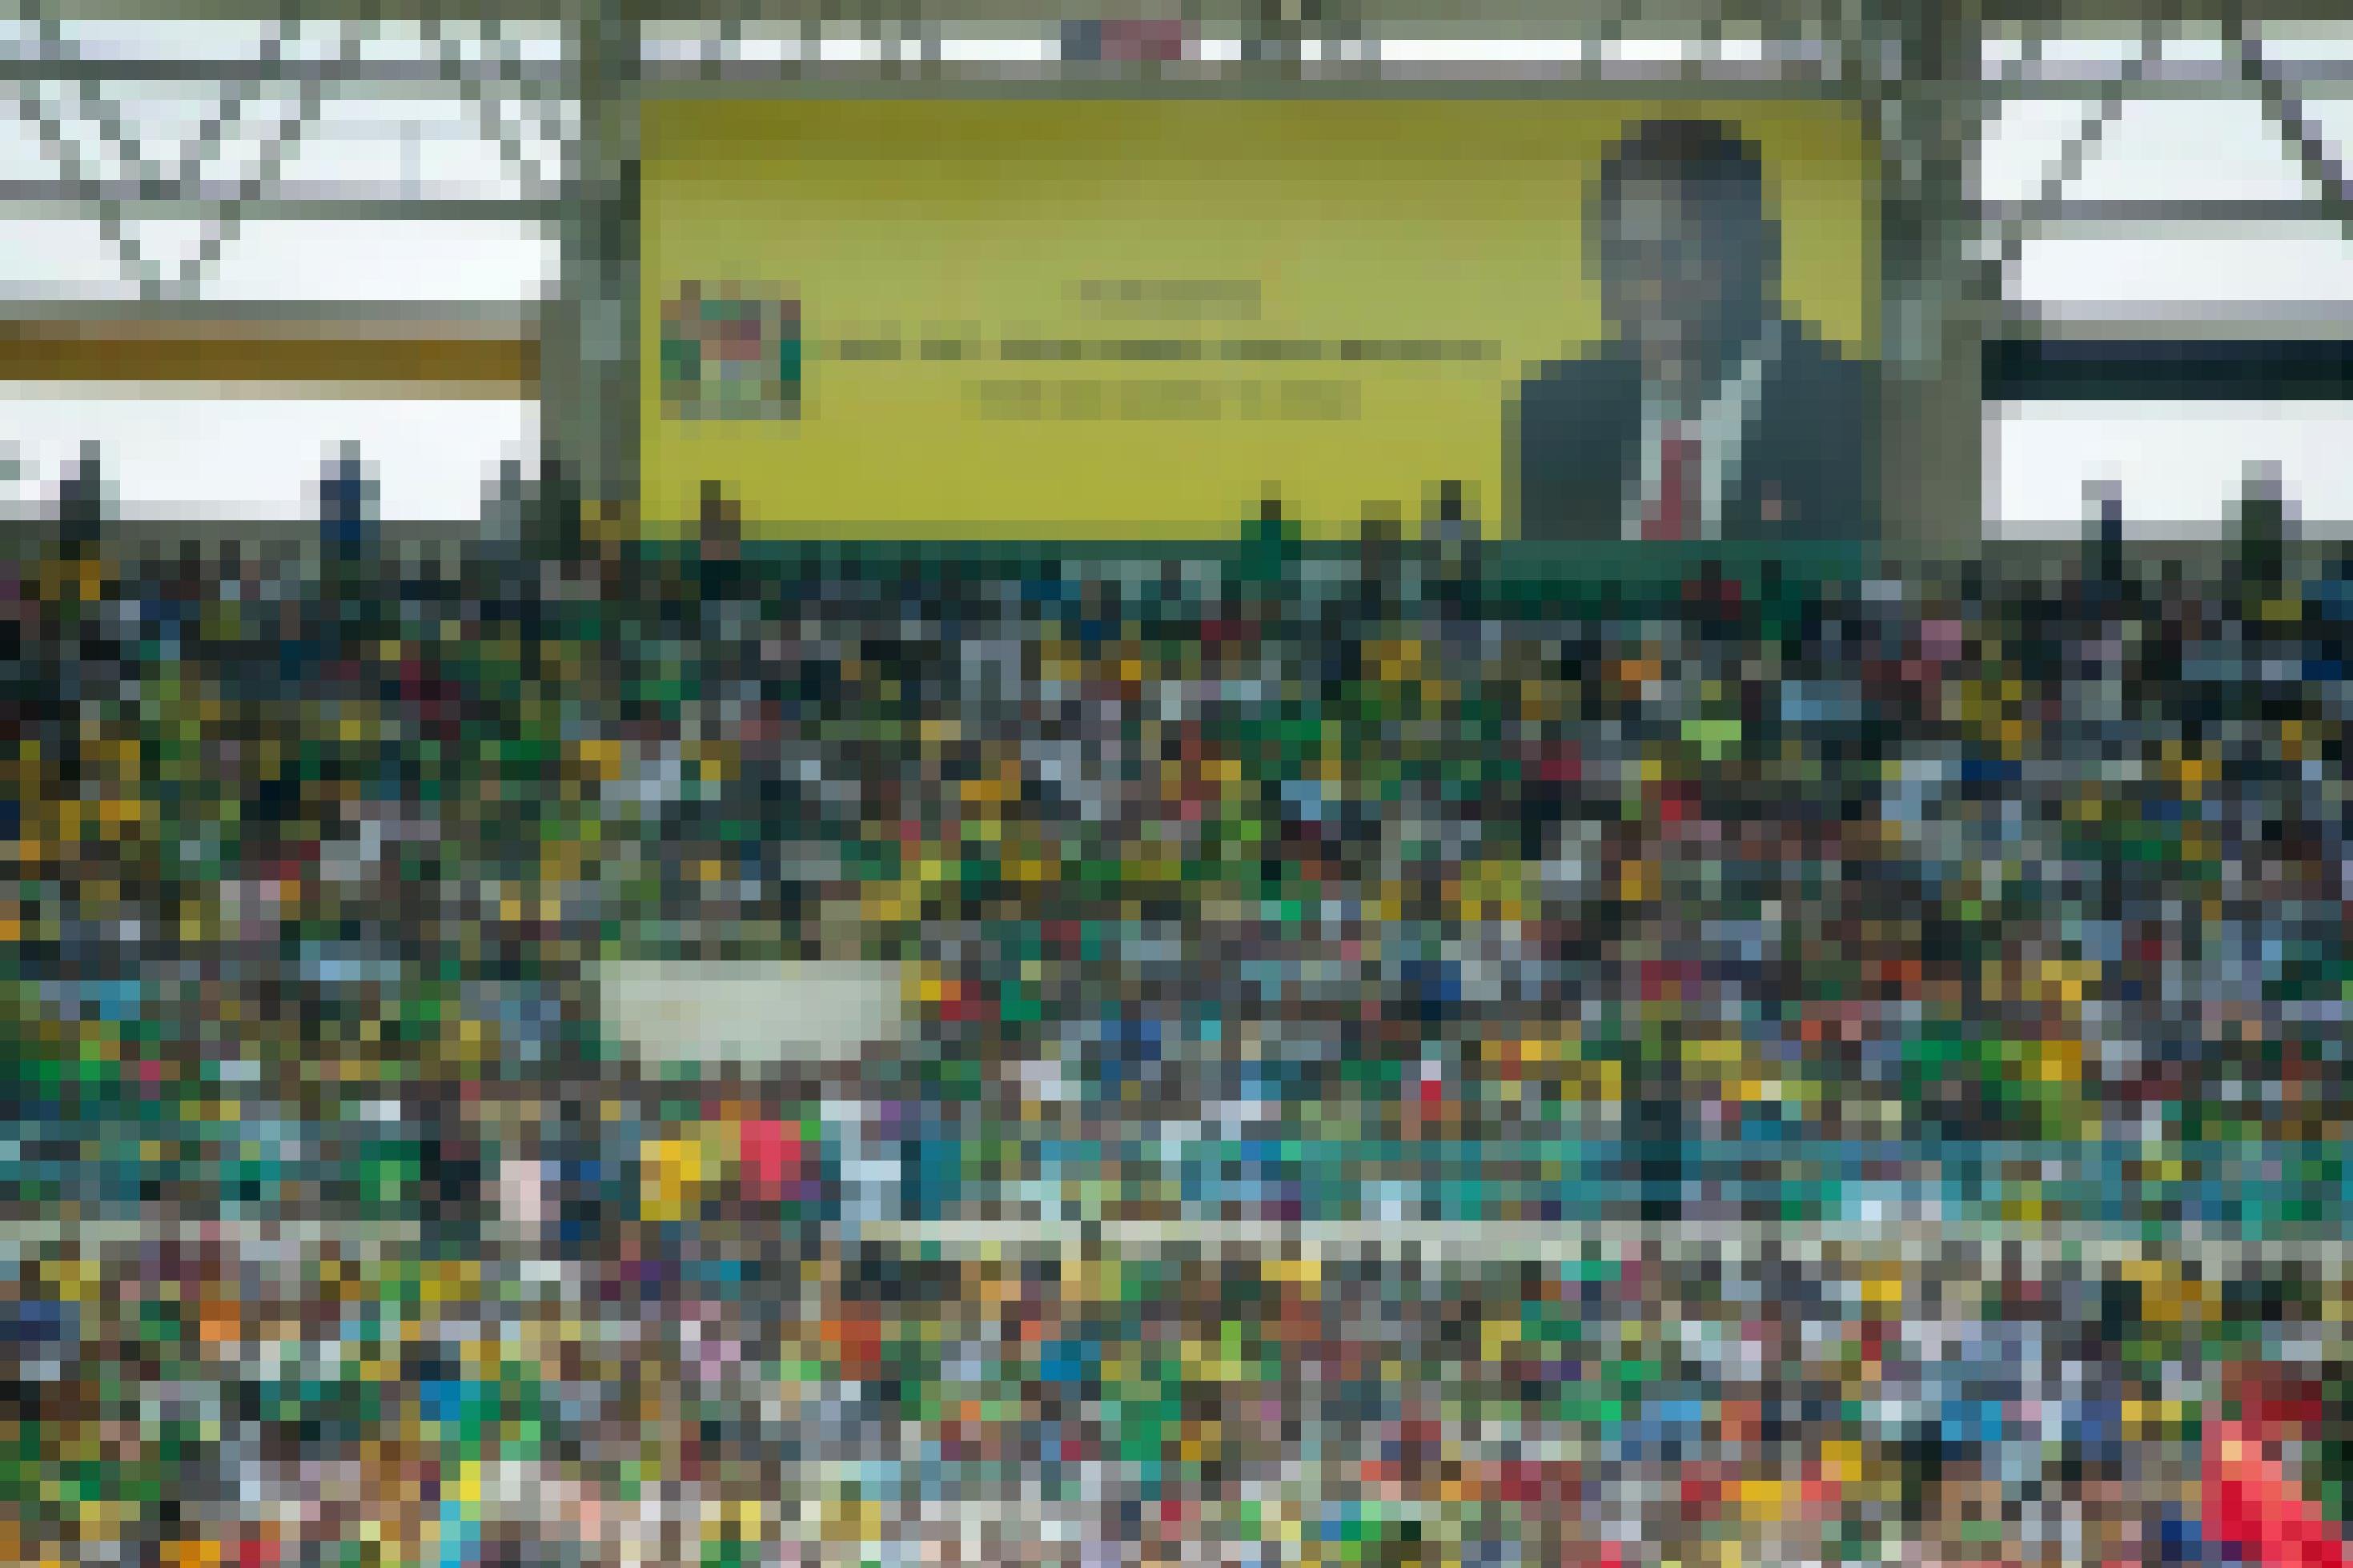 Zu sehen sind die voll besetzten Tribünen in einem Stadion, auf einer riesigen Leinwand ist das Bild des verstorbenen Präsidenten John Magufuli projiziert.